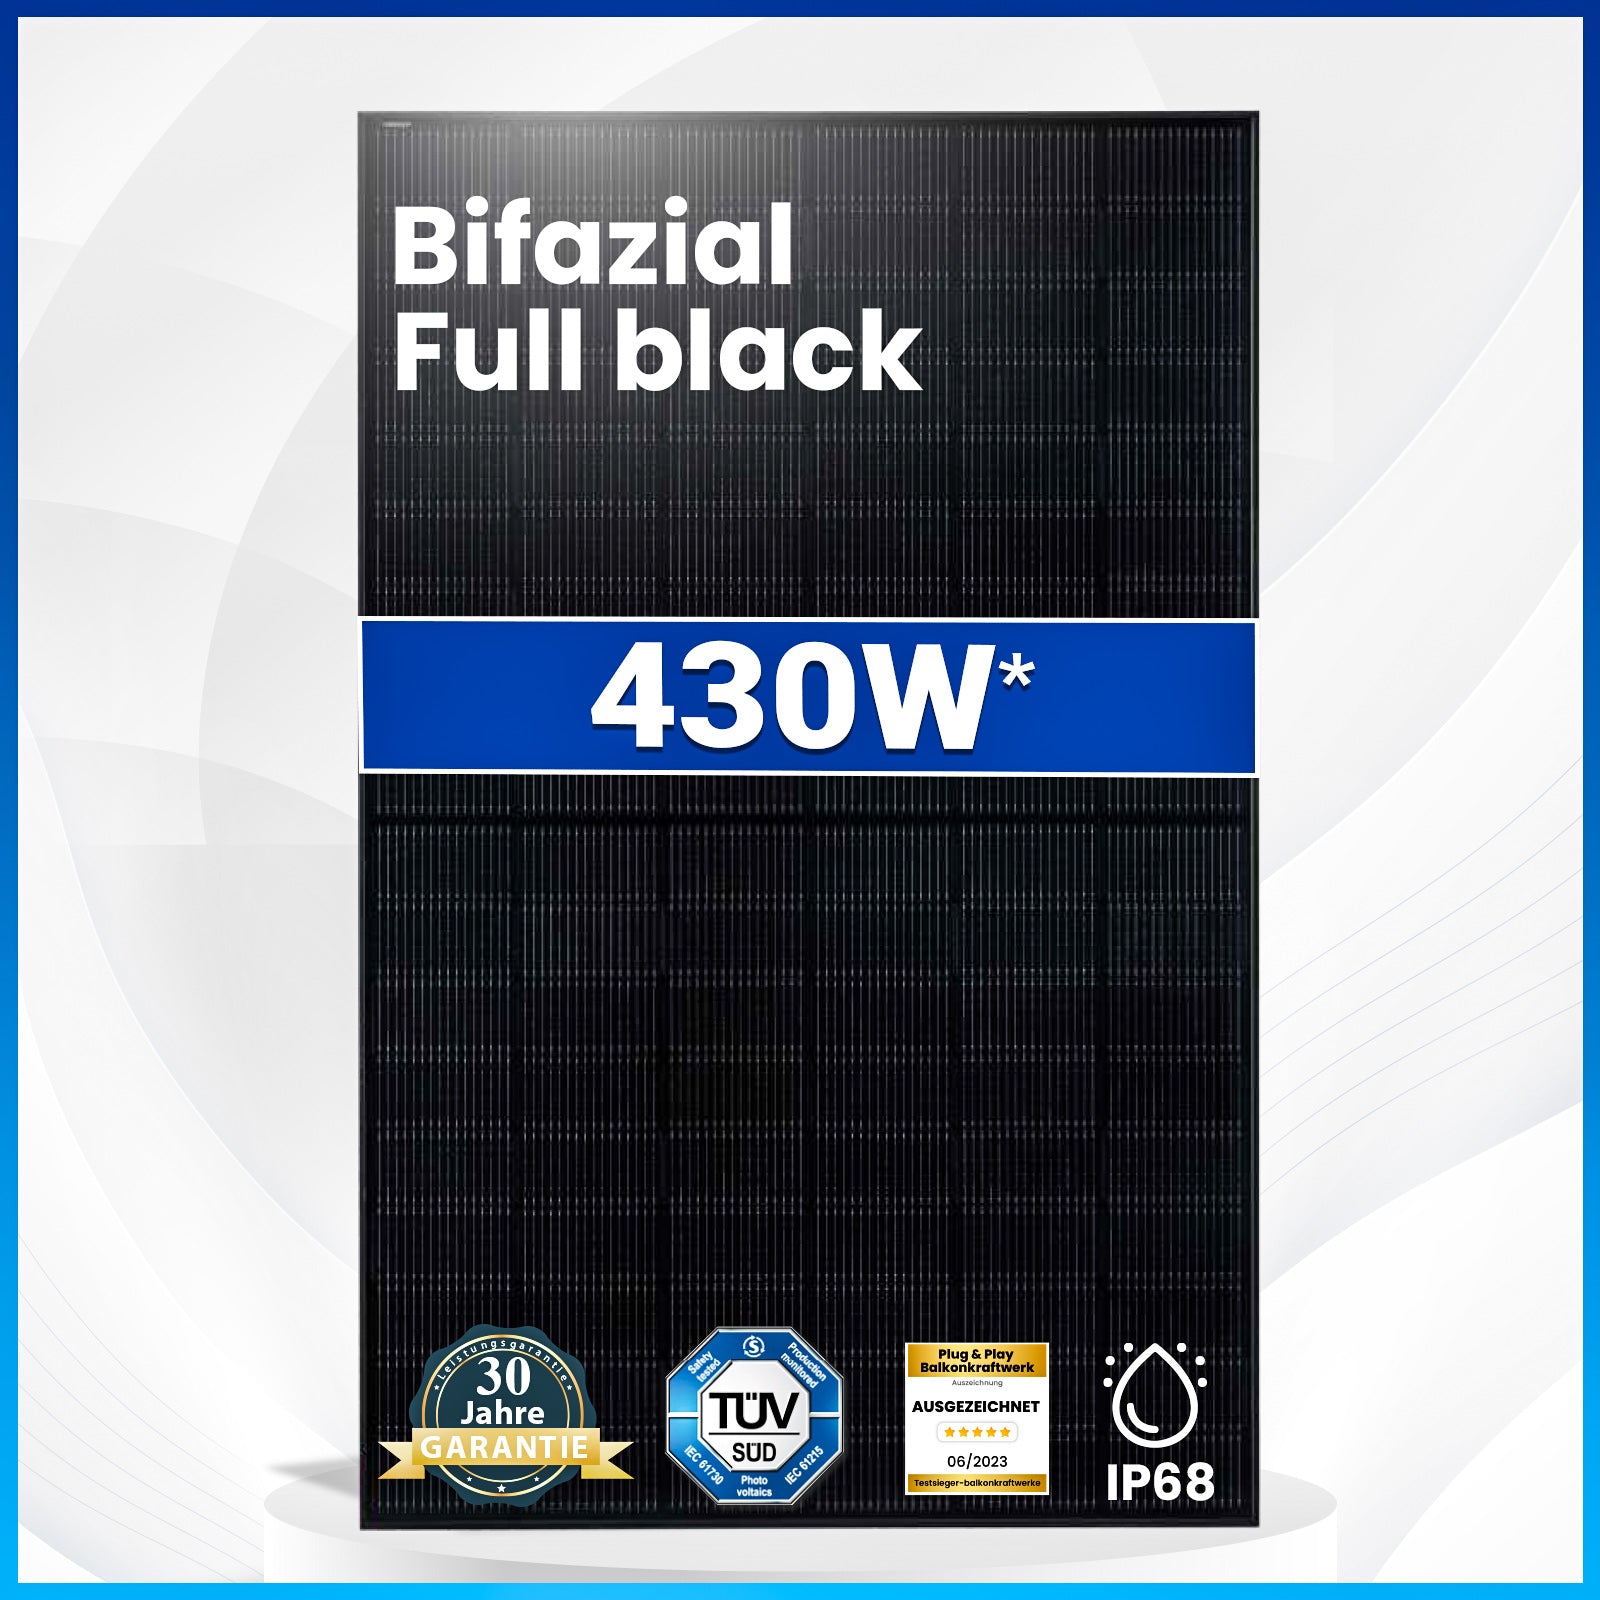 2x 430W Bifazial Solarmodul Glas-Glas Full Black - PV Modul